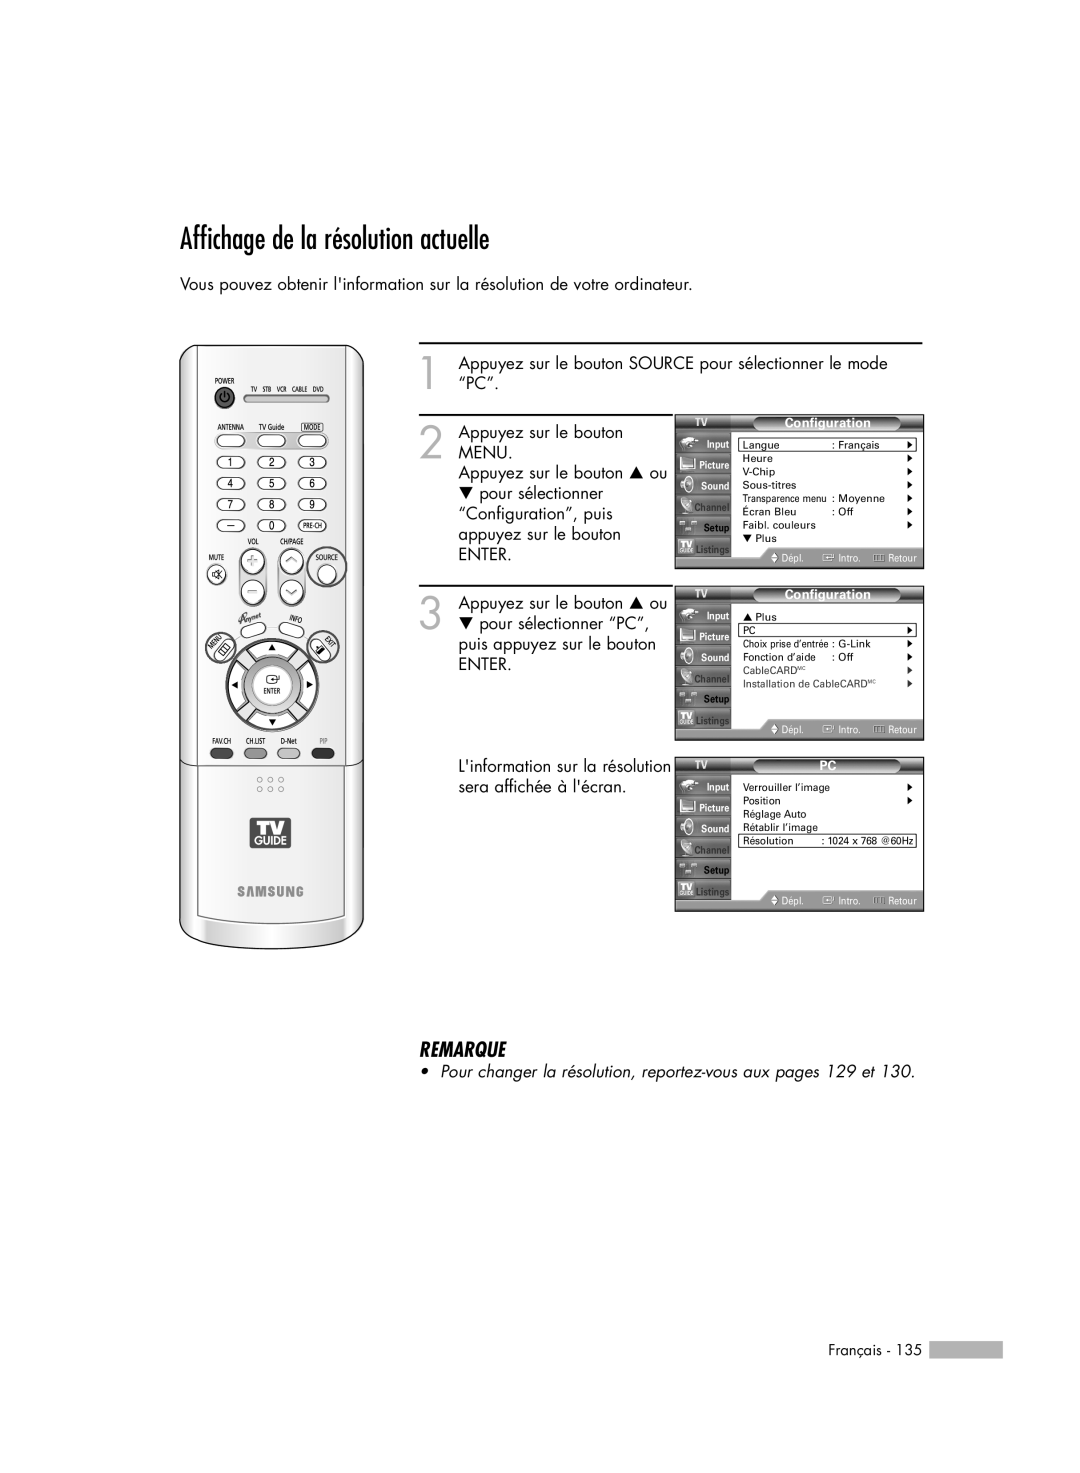 Samsung HL-R7178W Affichage de la résolution actuelle, Remarque, Appuyez sur le bouton SOURCE pour sélectionner le mode 